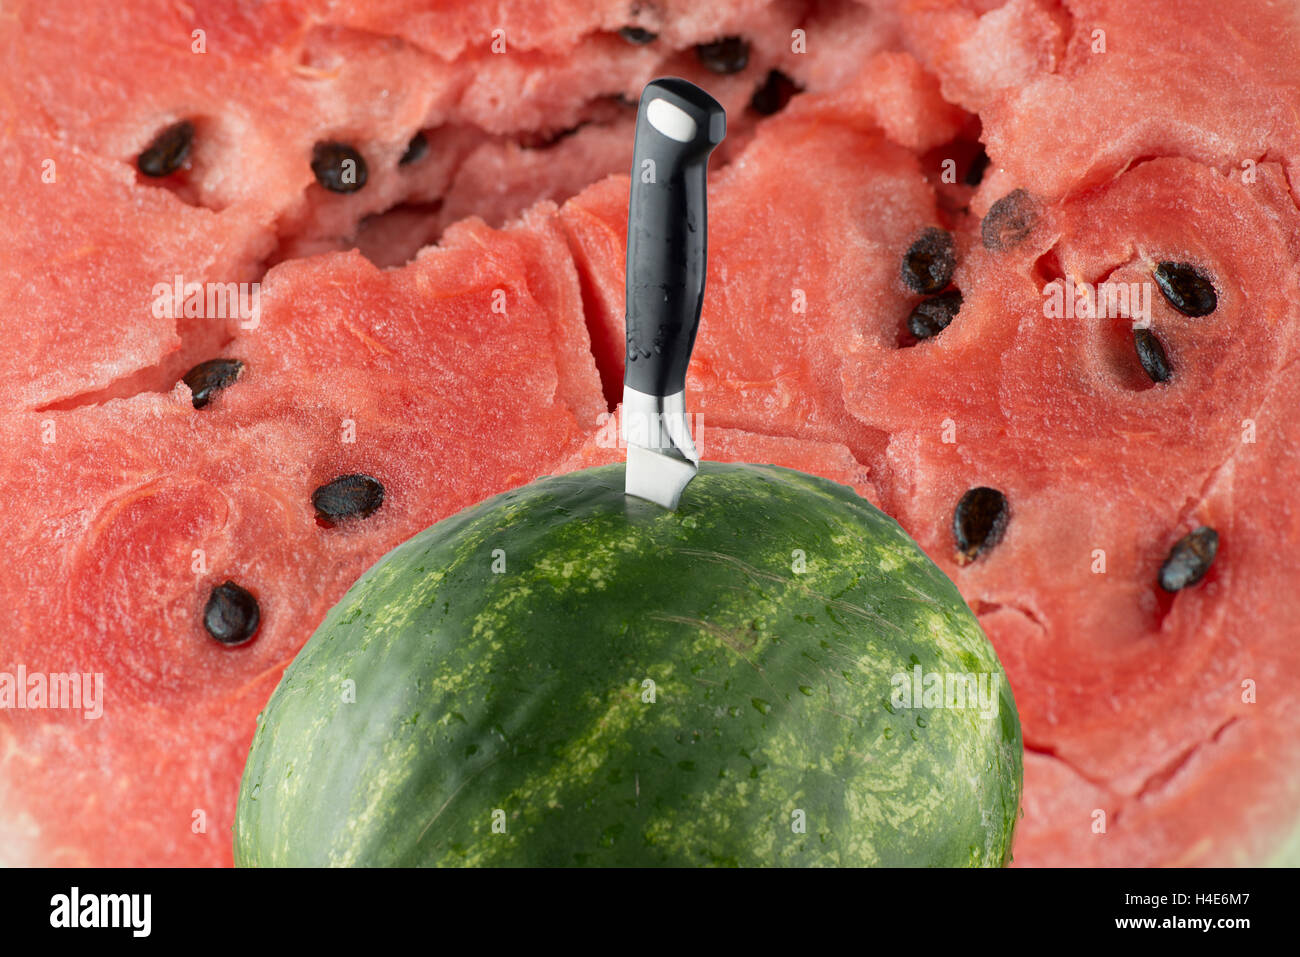 Abgelagertem Wassermelone mit Messer und rotem Fleisch Hintergrund Stockfoto